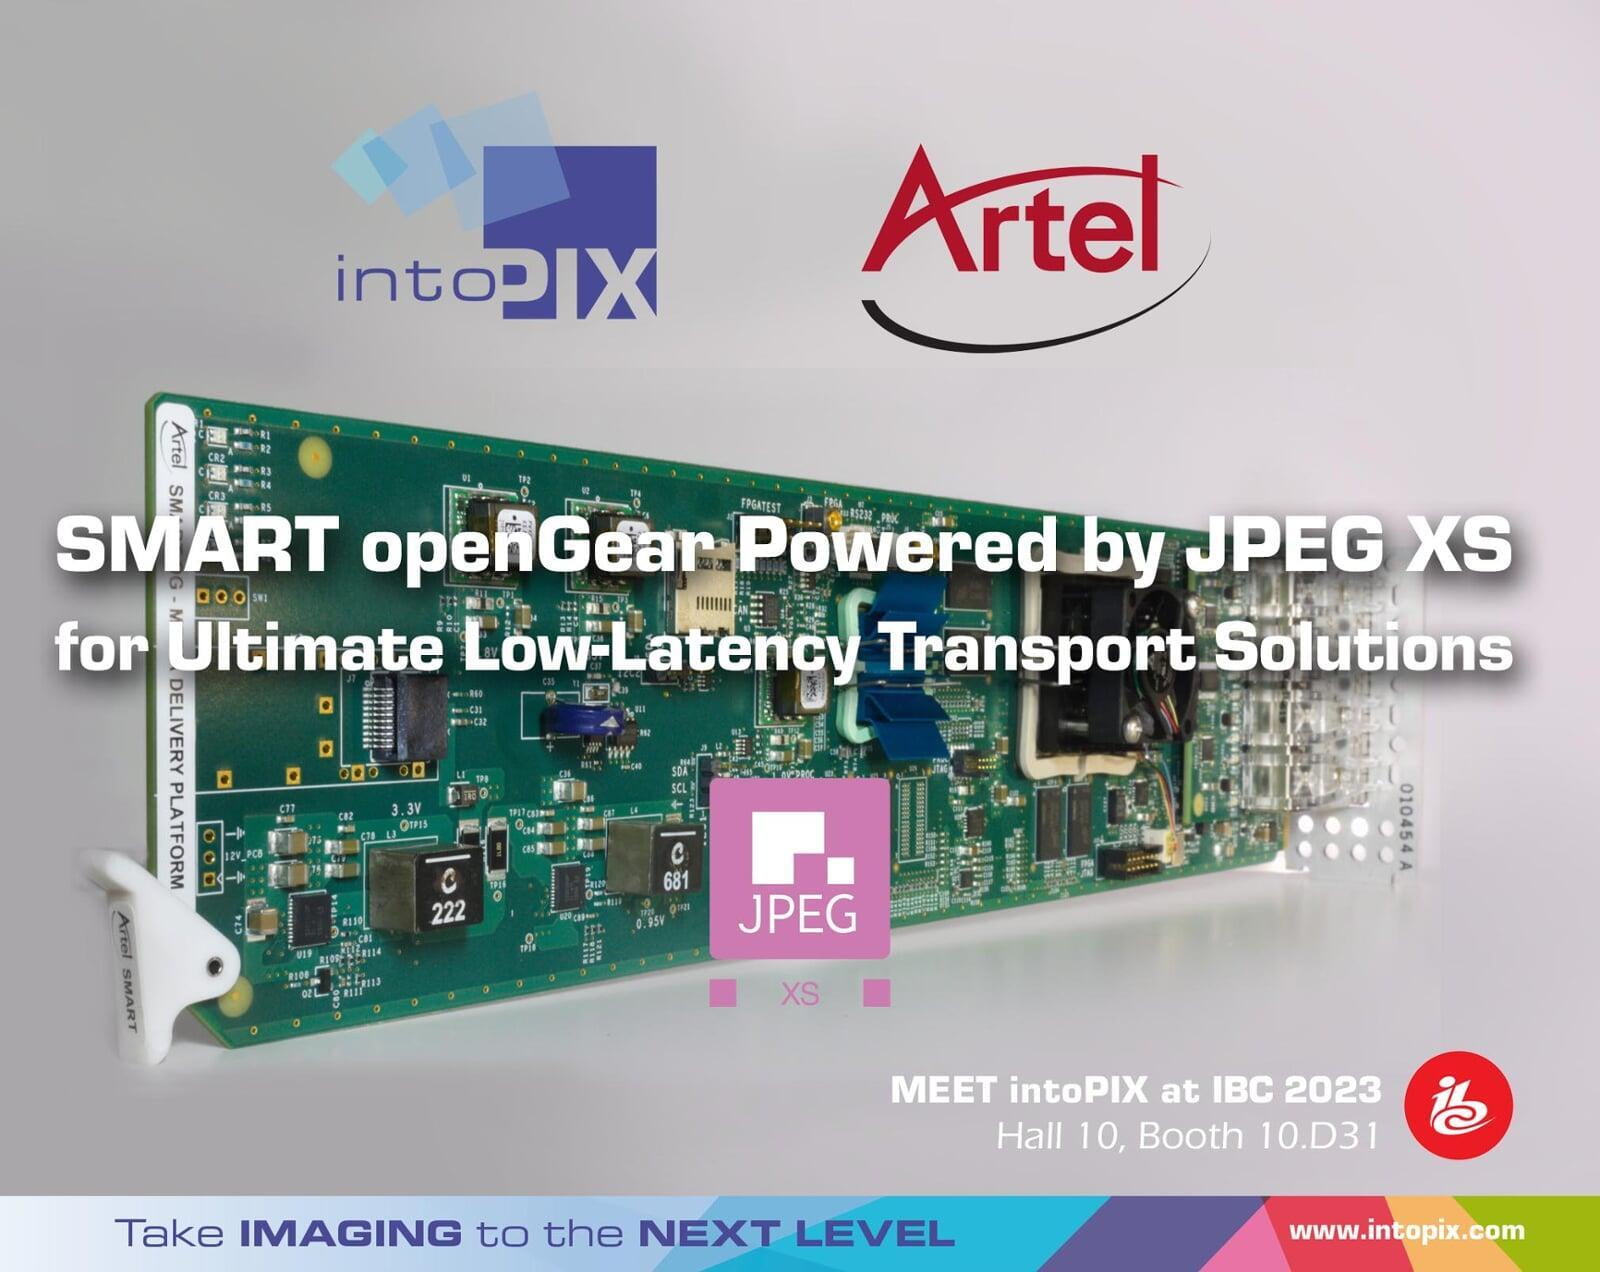 強化されたArtel SMART openGear®は、intoPIXのJPEG  XSテクノロジーを活用し、究極の低レイテンシー・トランスポート・ソリューションを実現します。